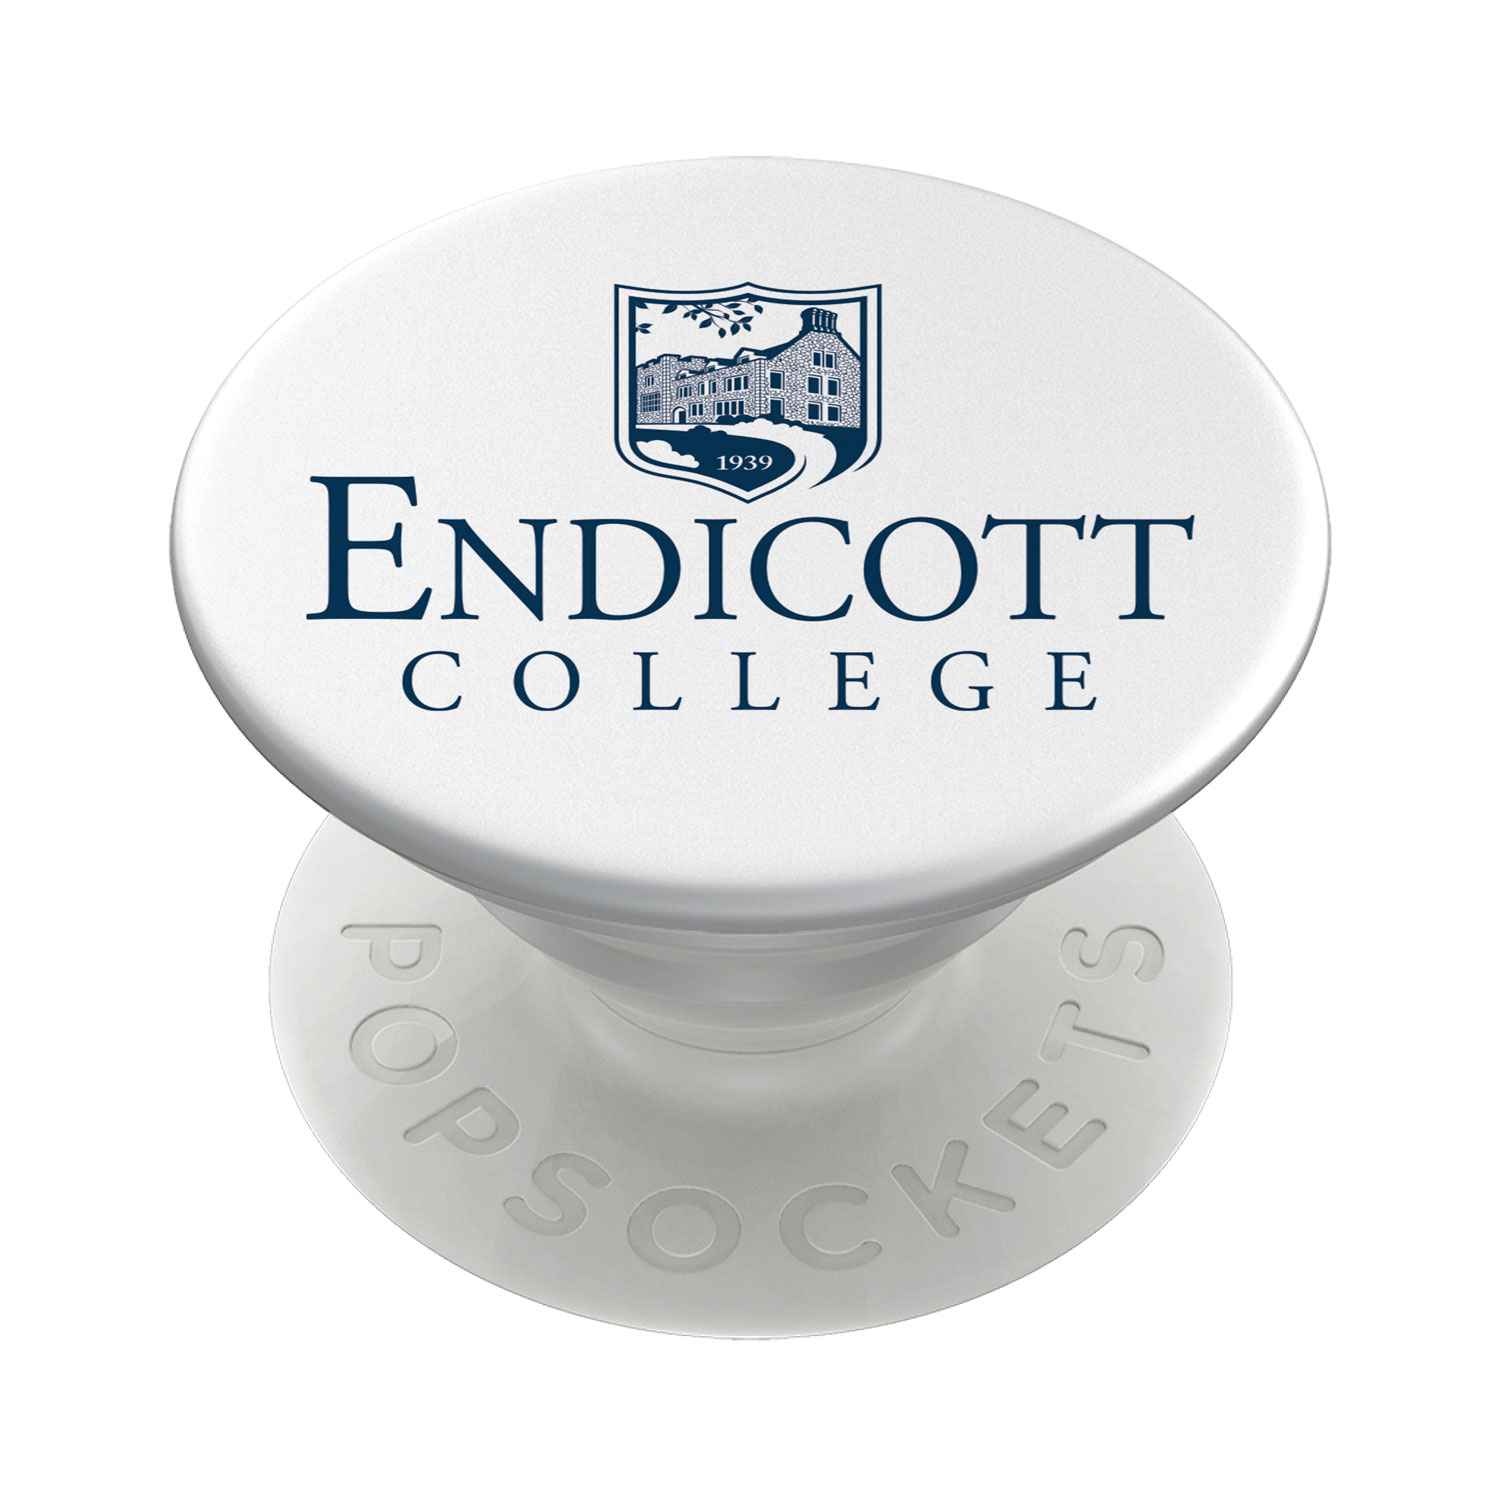 Endicott College Popsocket